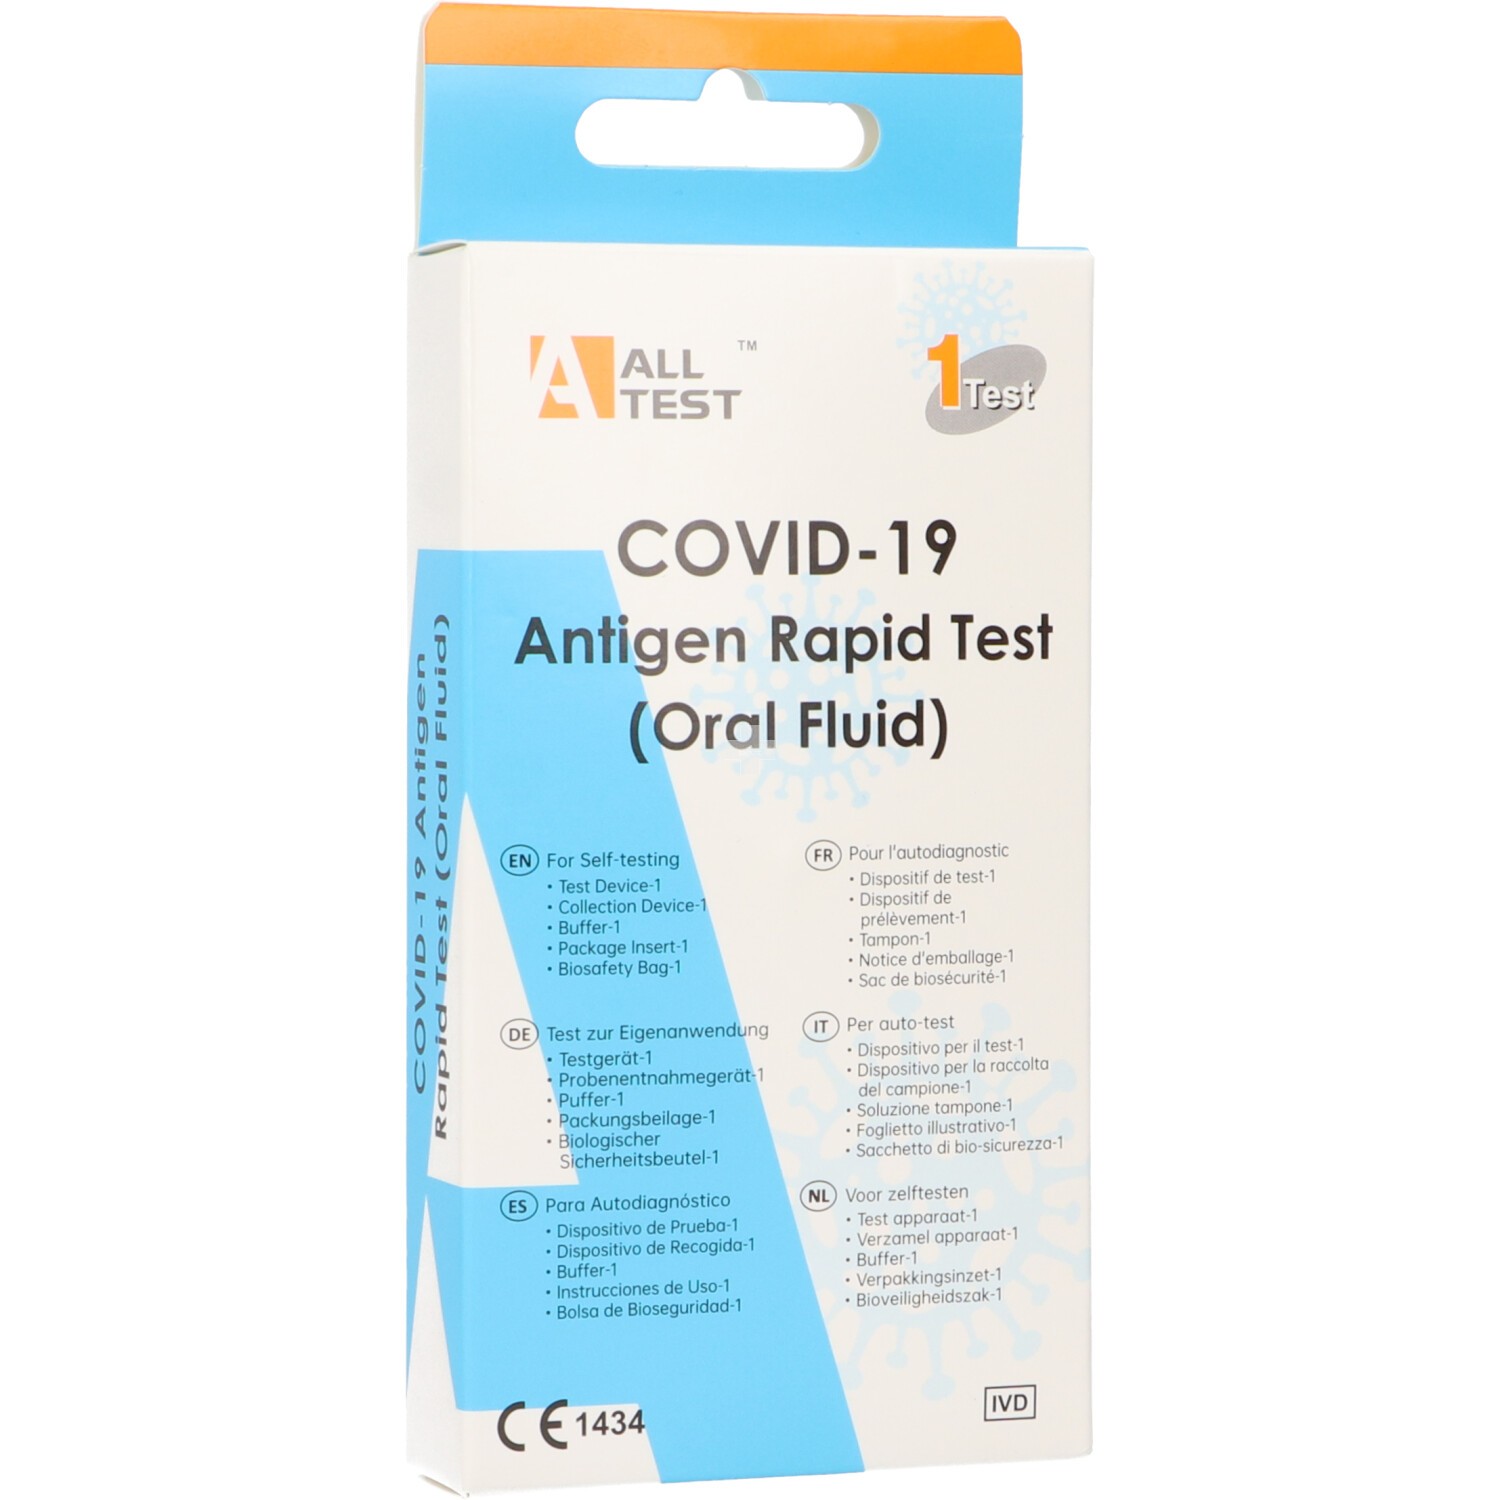 All Rest Test Antígenos Rápido Covid 19 por Fluido Oral (Saliva)